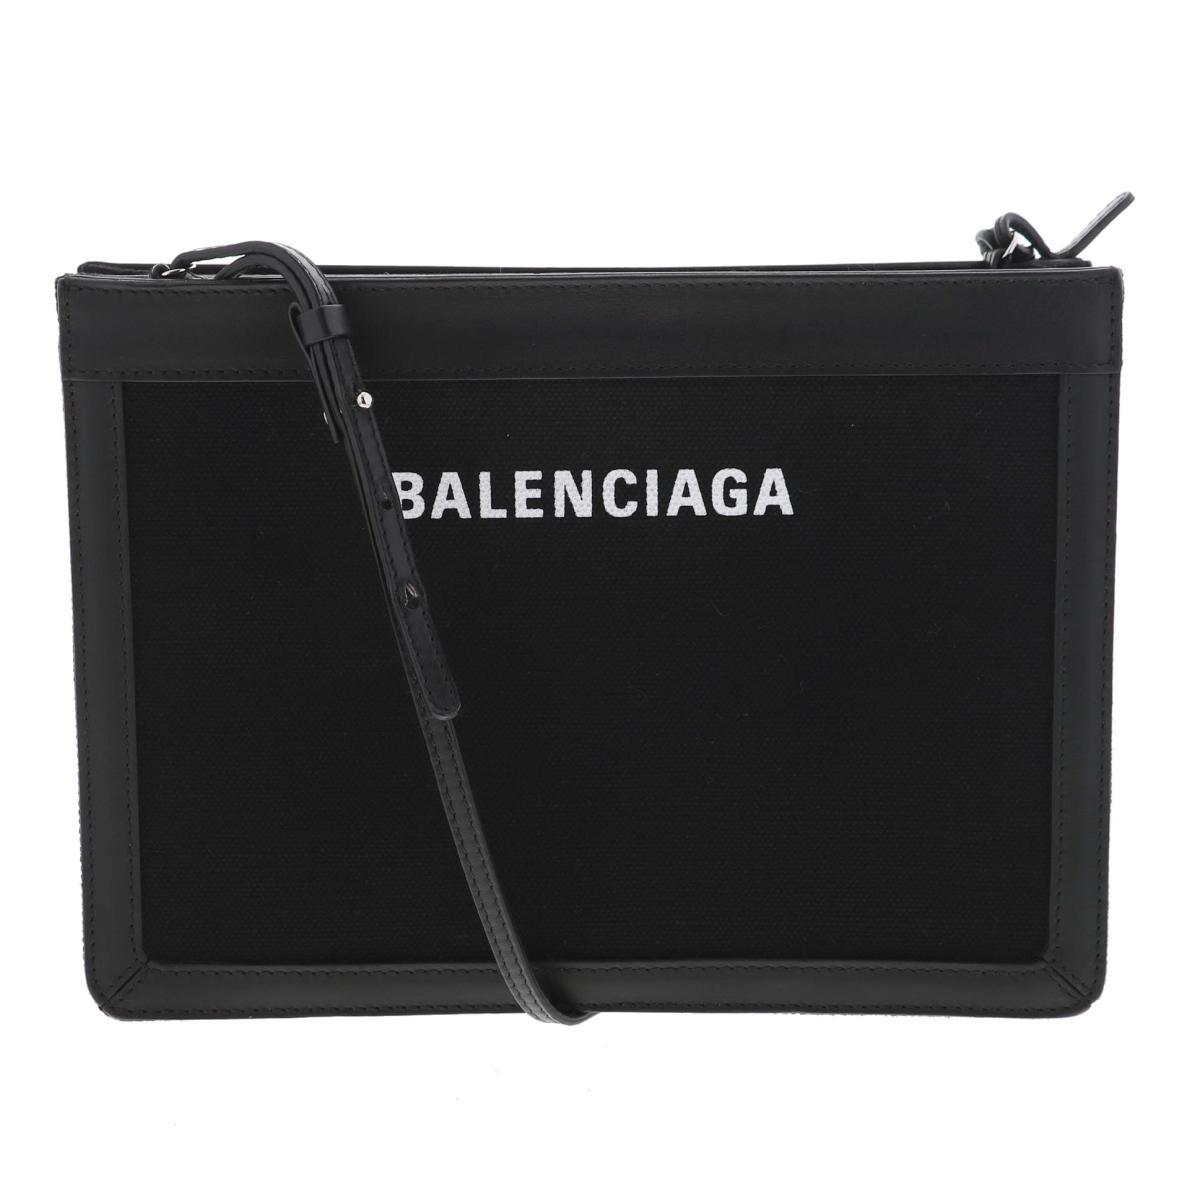 BALENCIAGA バレンシアガ バッグ ショルダー/メッセンジャーバッグ 339937 Black Leather ネイビーポシェット ショルダーバッグ